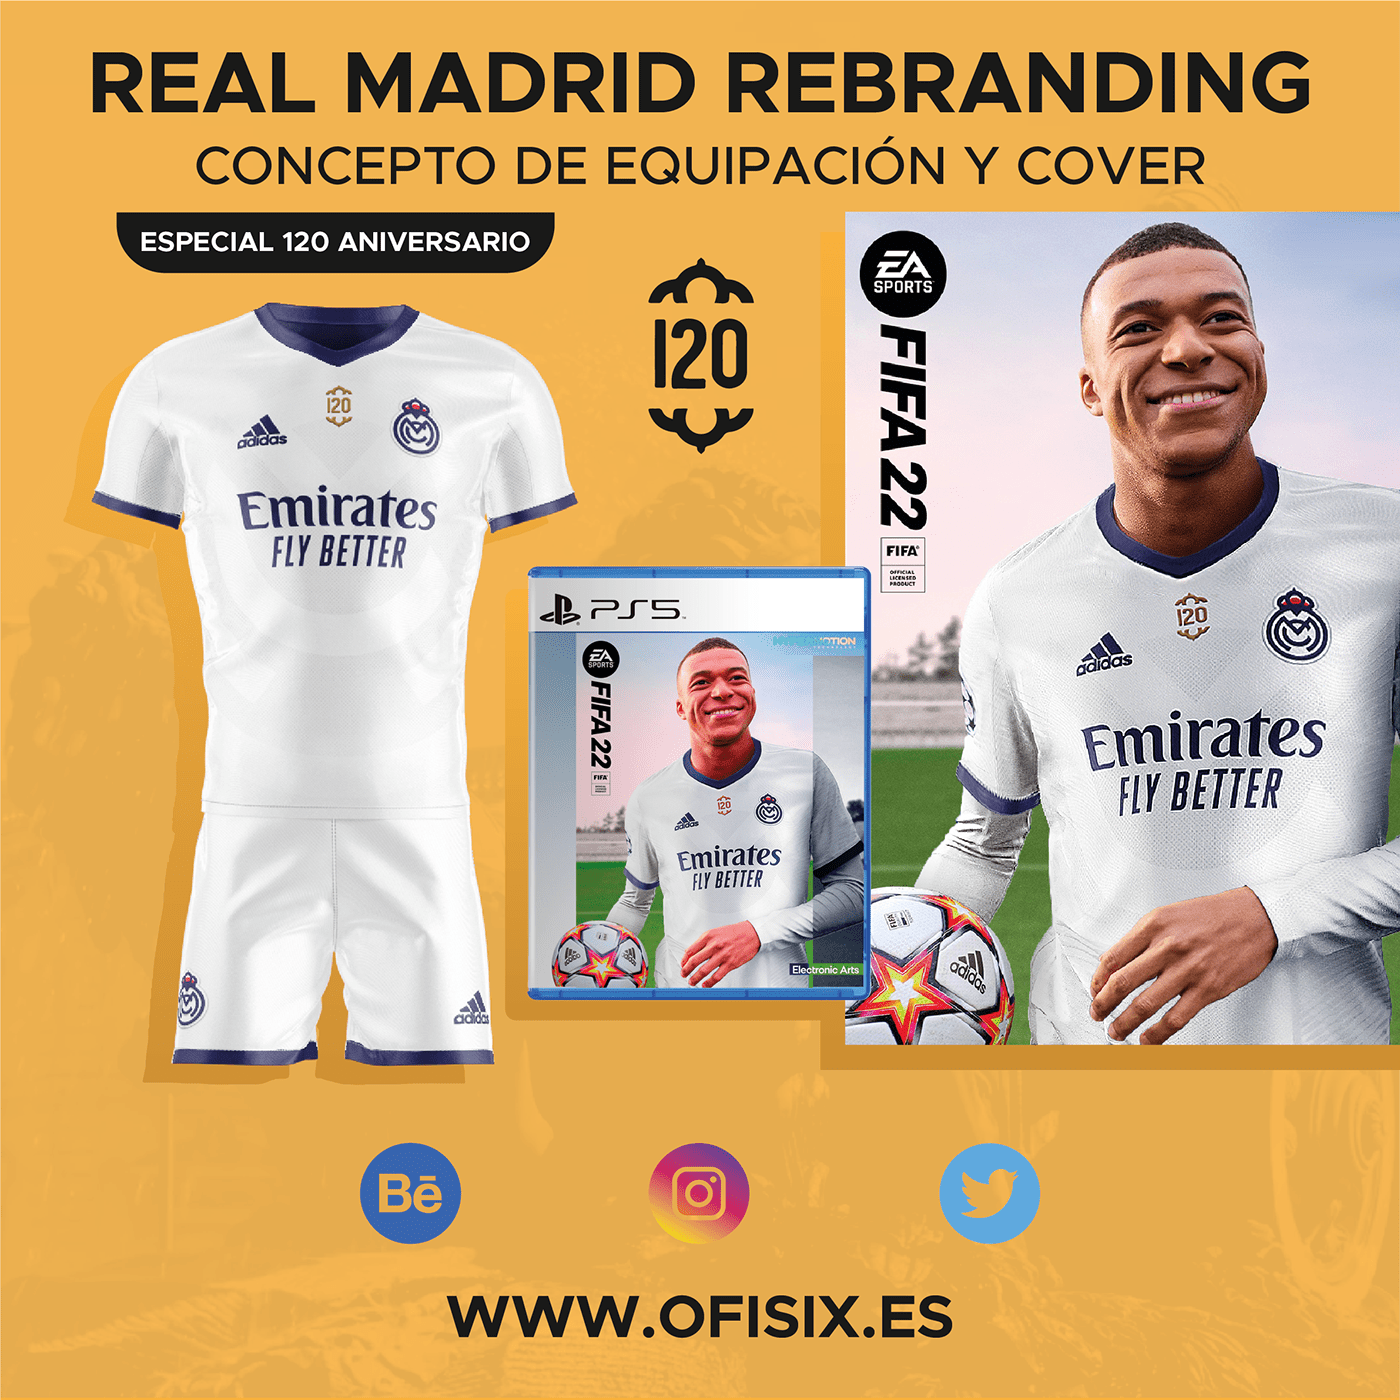 design diseño equipo escudo football Futbol marca nuevo diseño Real Madrid rebranding